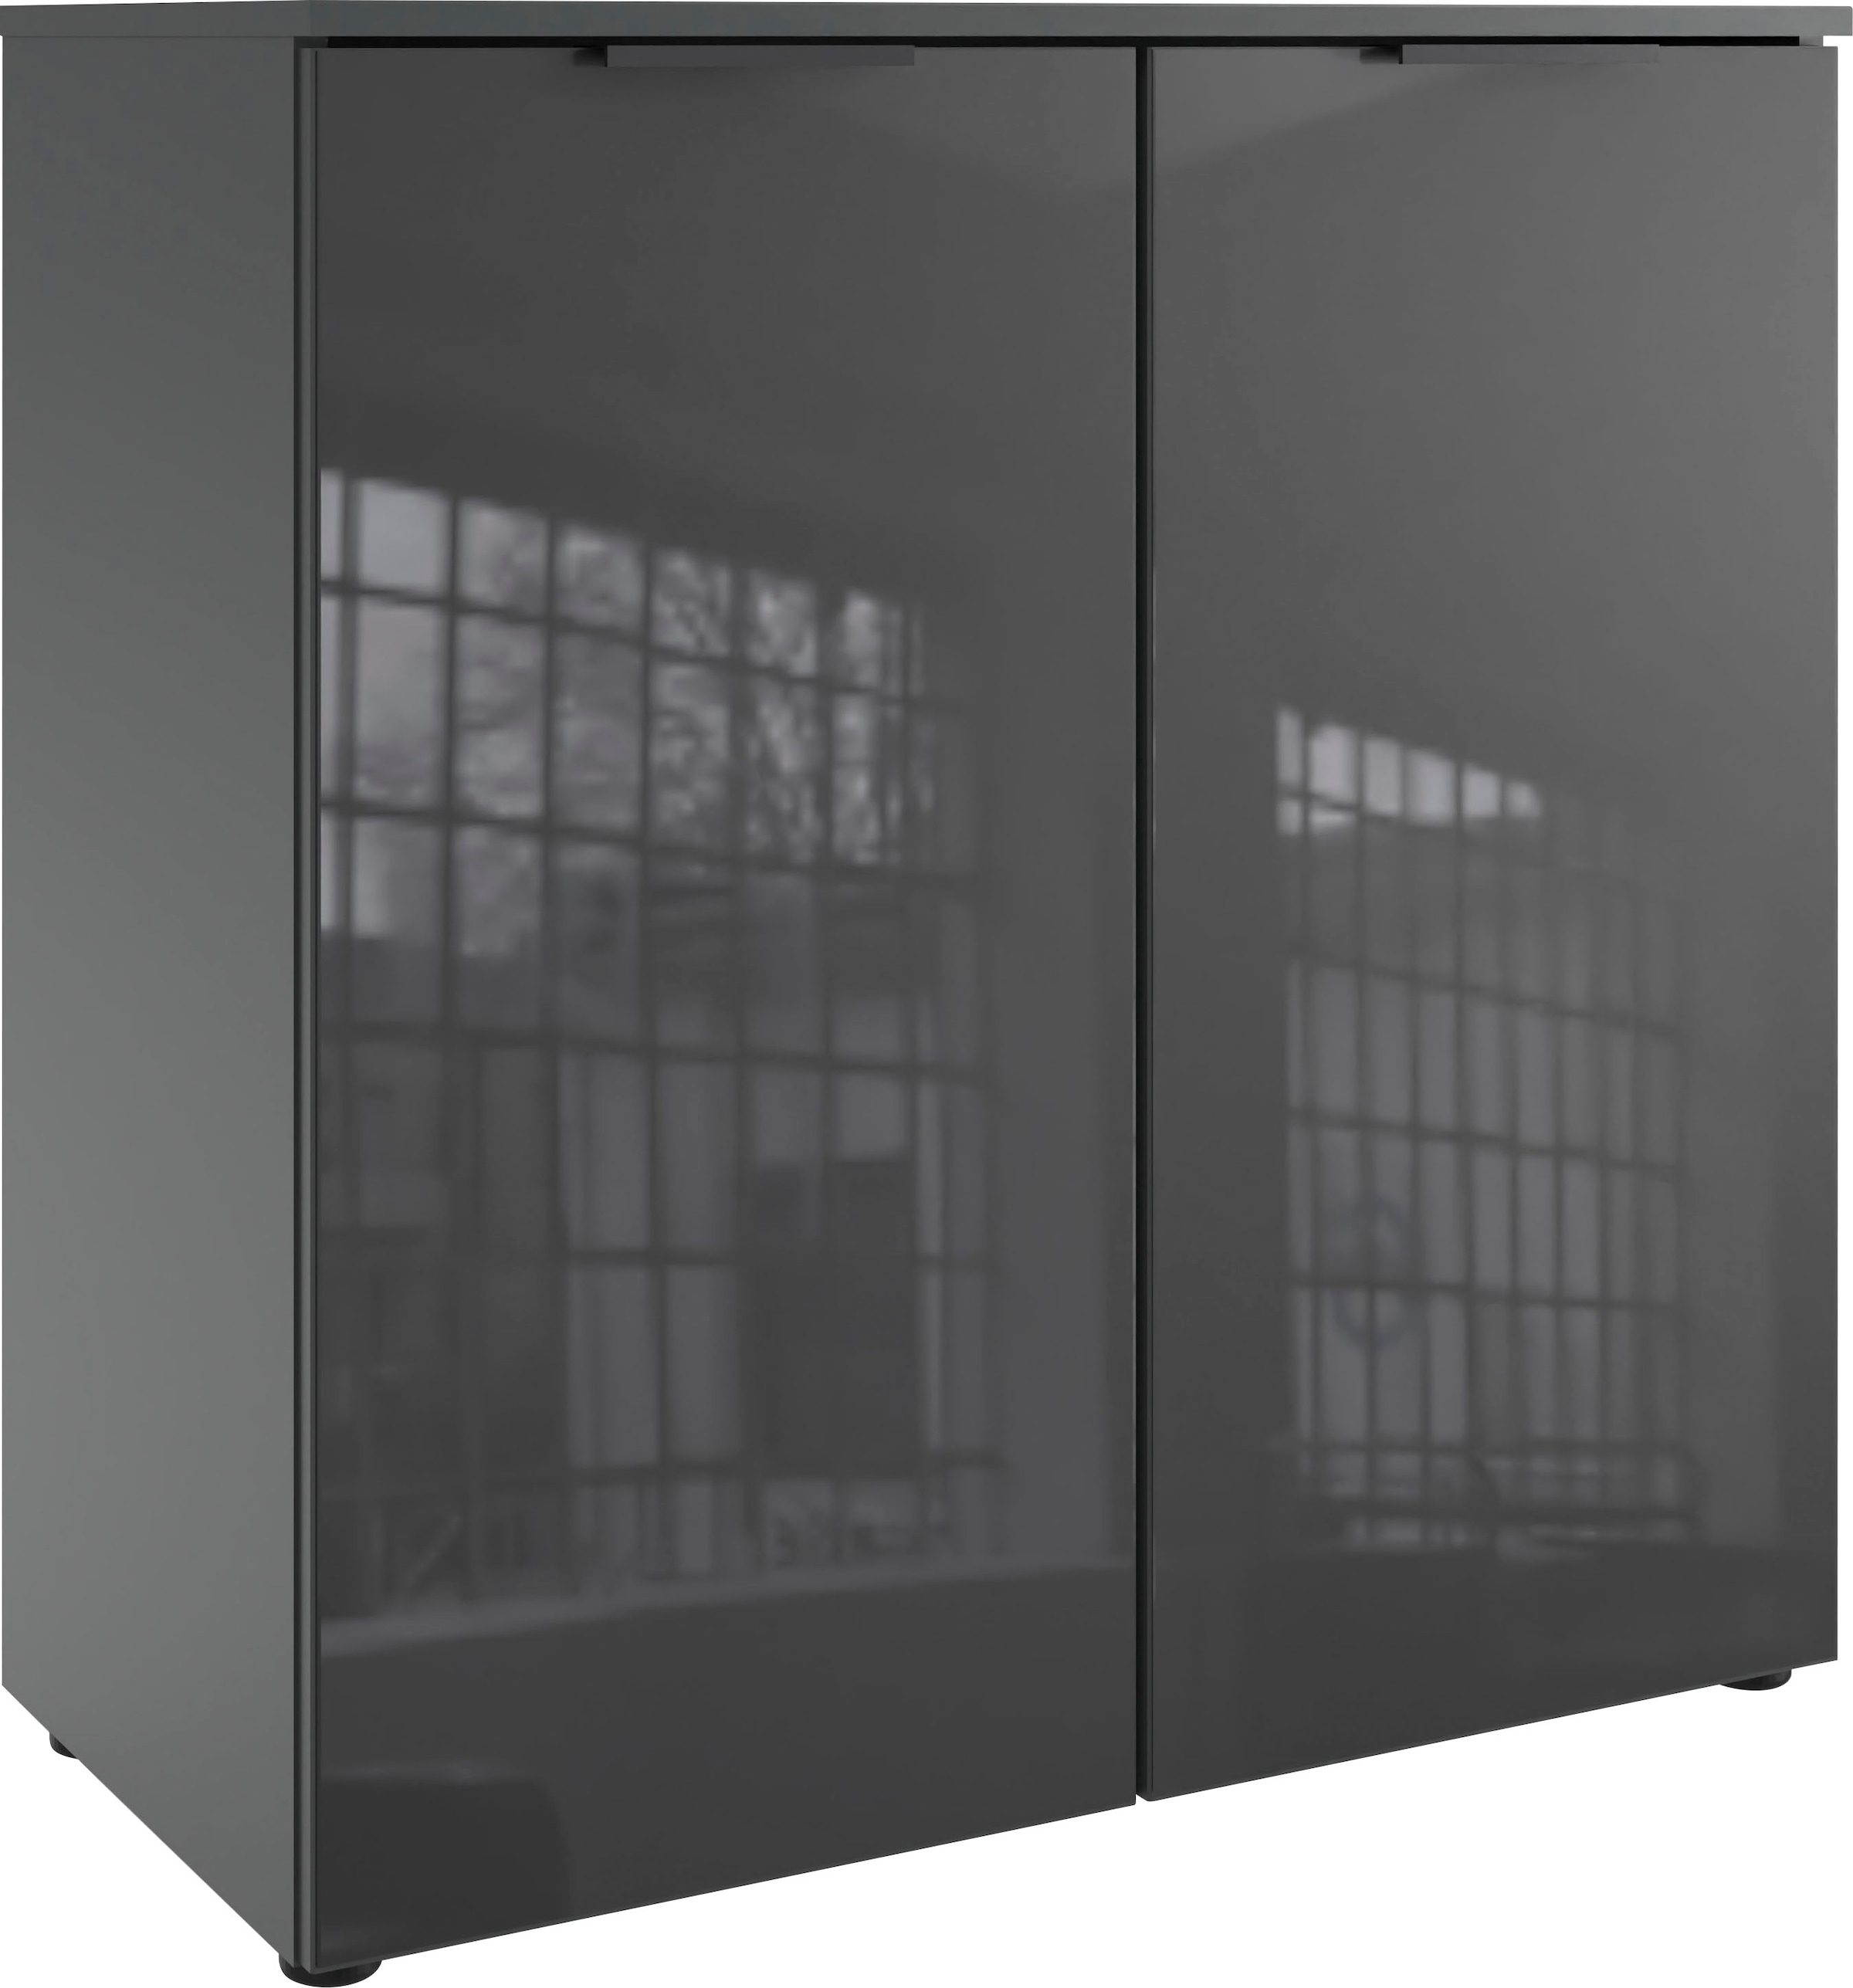 Wimex Kommode "Level36 black C by fresh to go", mit Glaselementen auf der Front, soft-close Funktion, 81cm breit